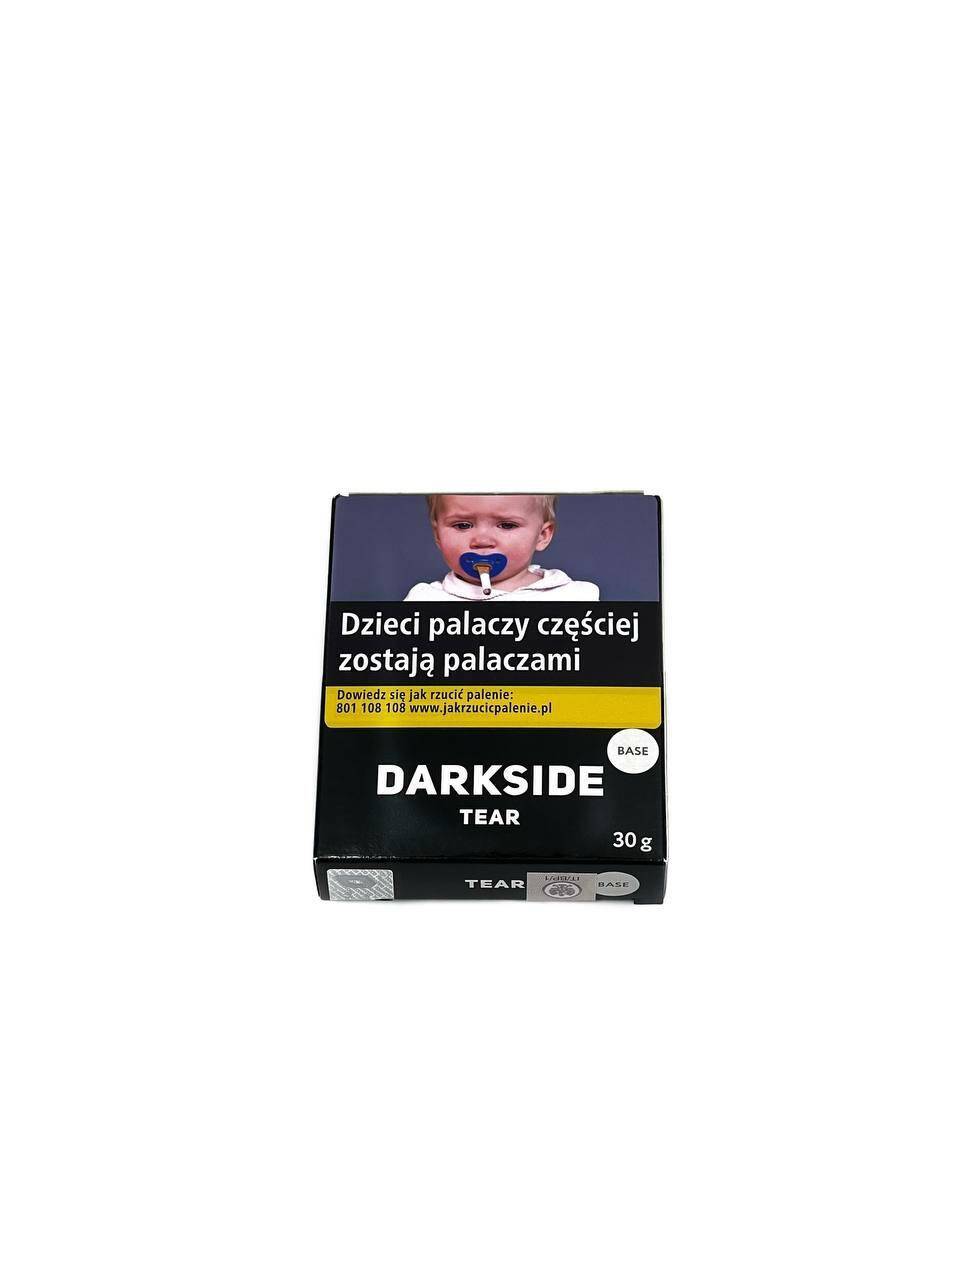 DarkSide 30g